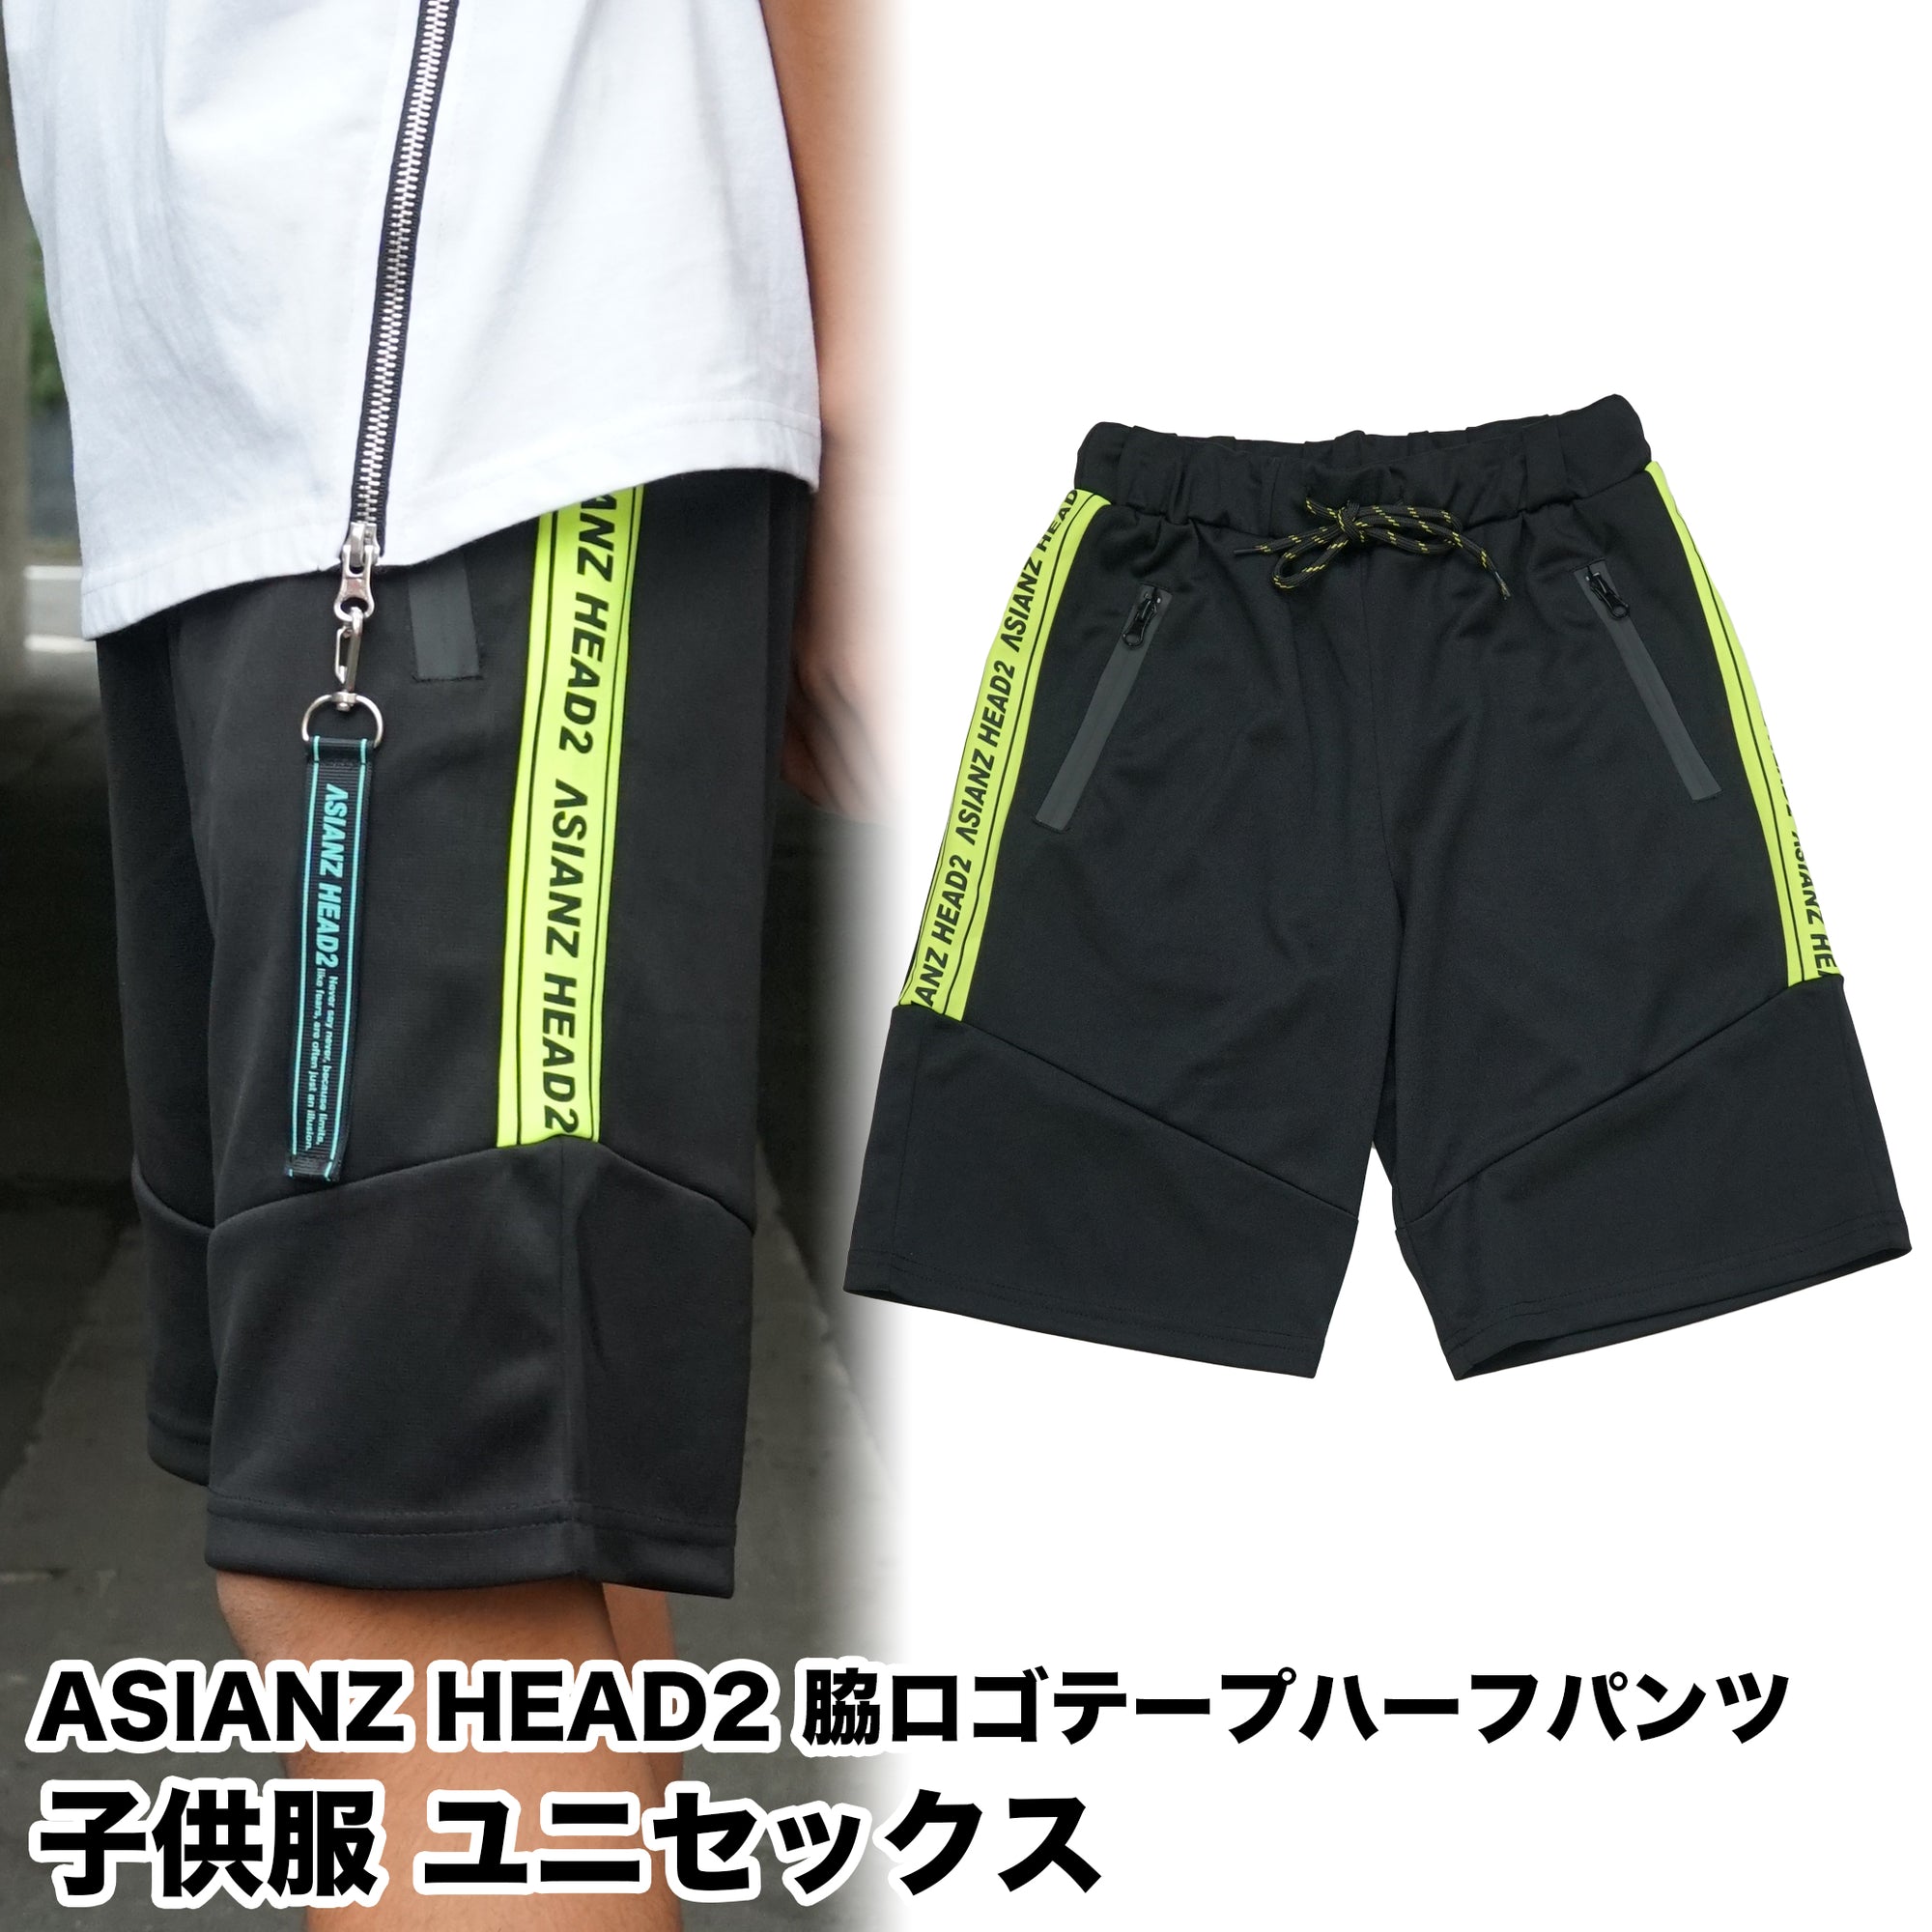 (40%オフ! セール商品)ASIANZ HEAD2 脇ロゴテープハーフパンツ キッズウェアー